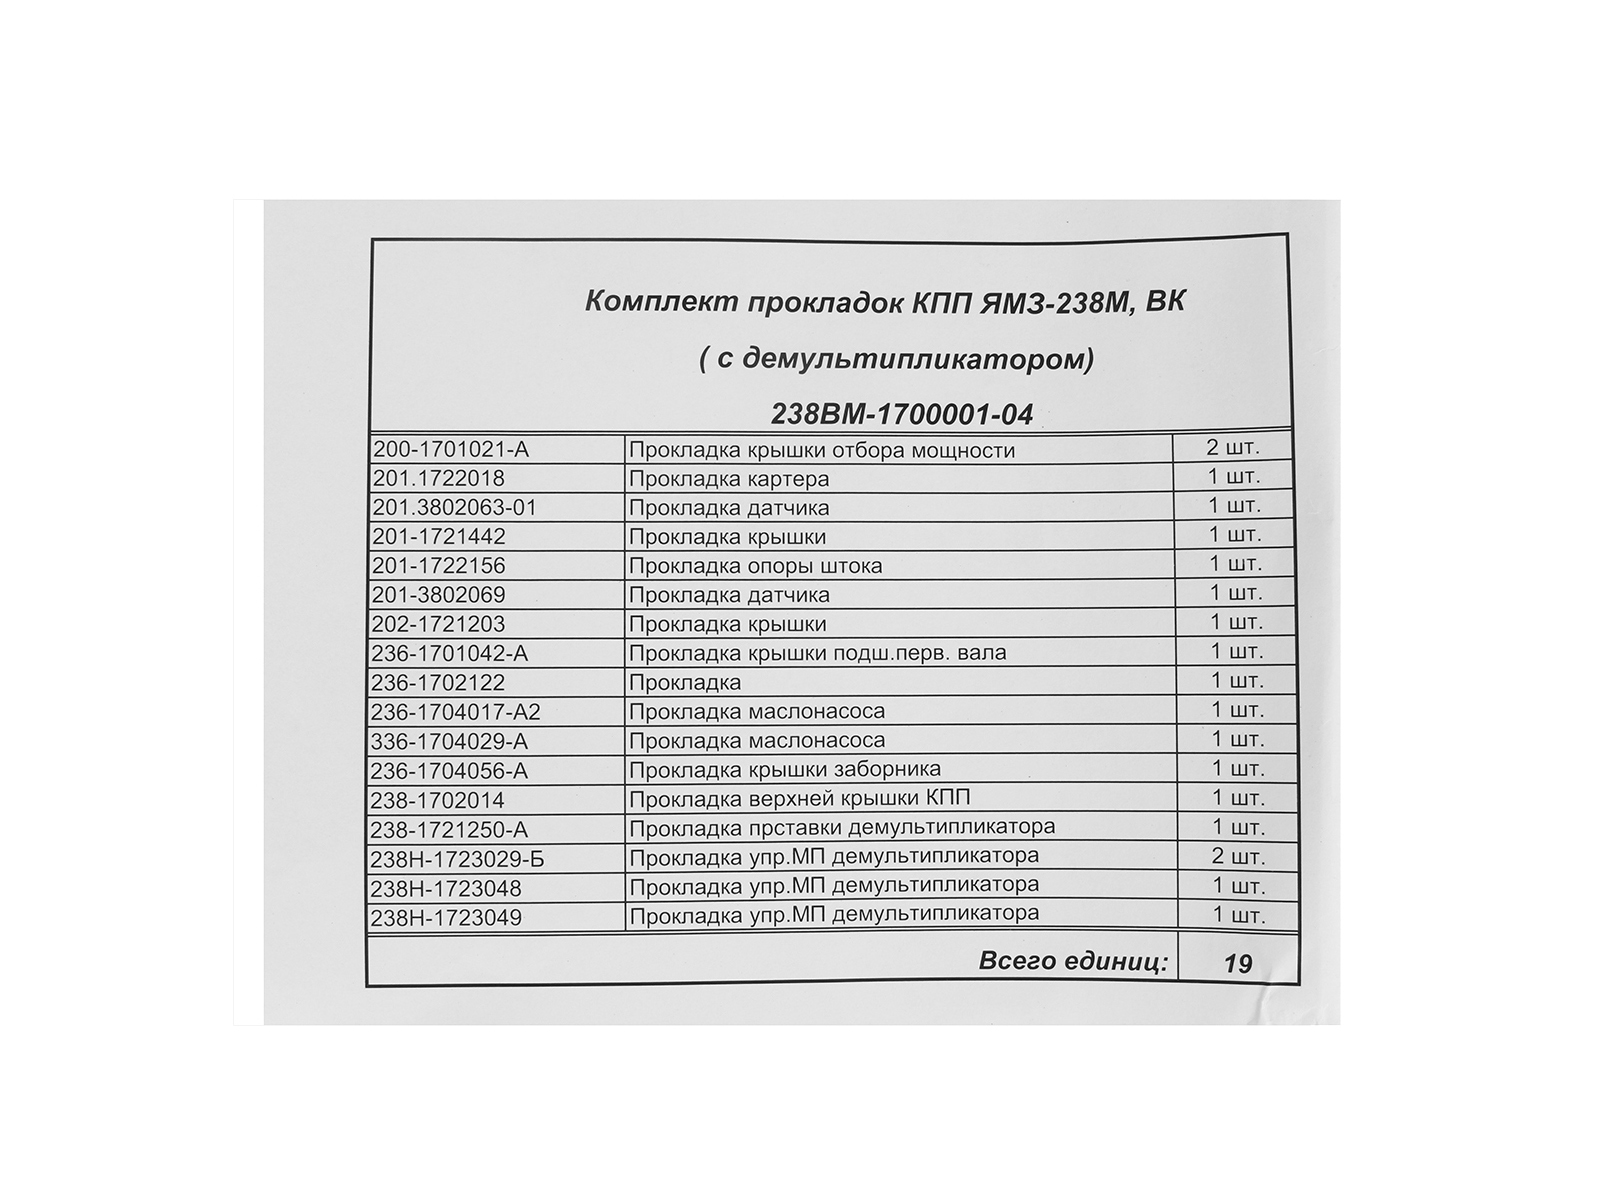 Прокладка КПП ЯМЗ-238ВМ с демультипликатором комплект фотография №4